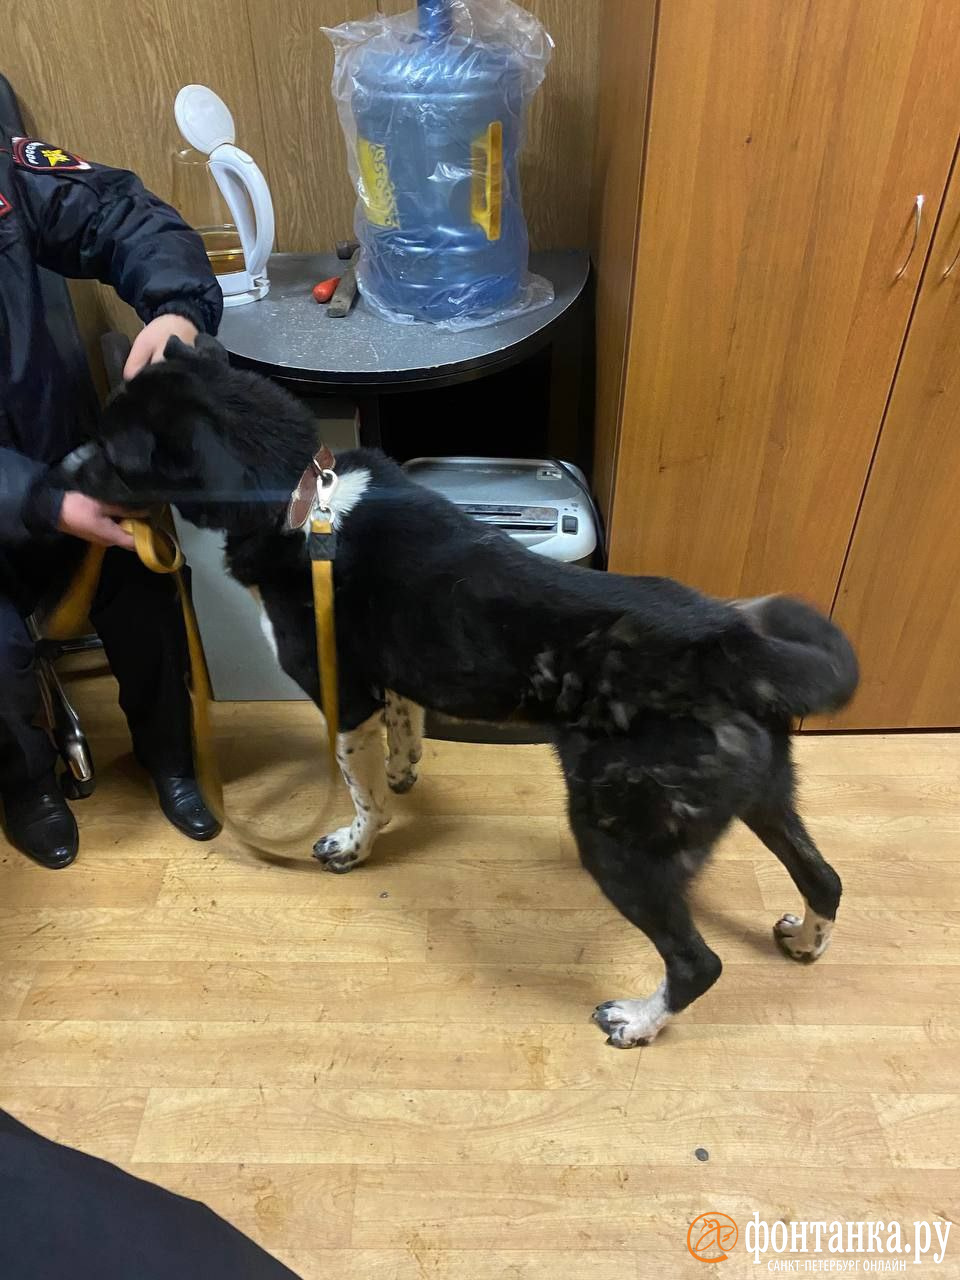 Активисты рассказали, что забрали «метрополитеновского» пса у нового хозяина. Он якобы не кормил собаку несколько дней